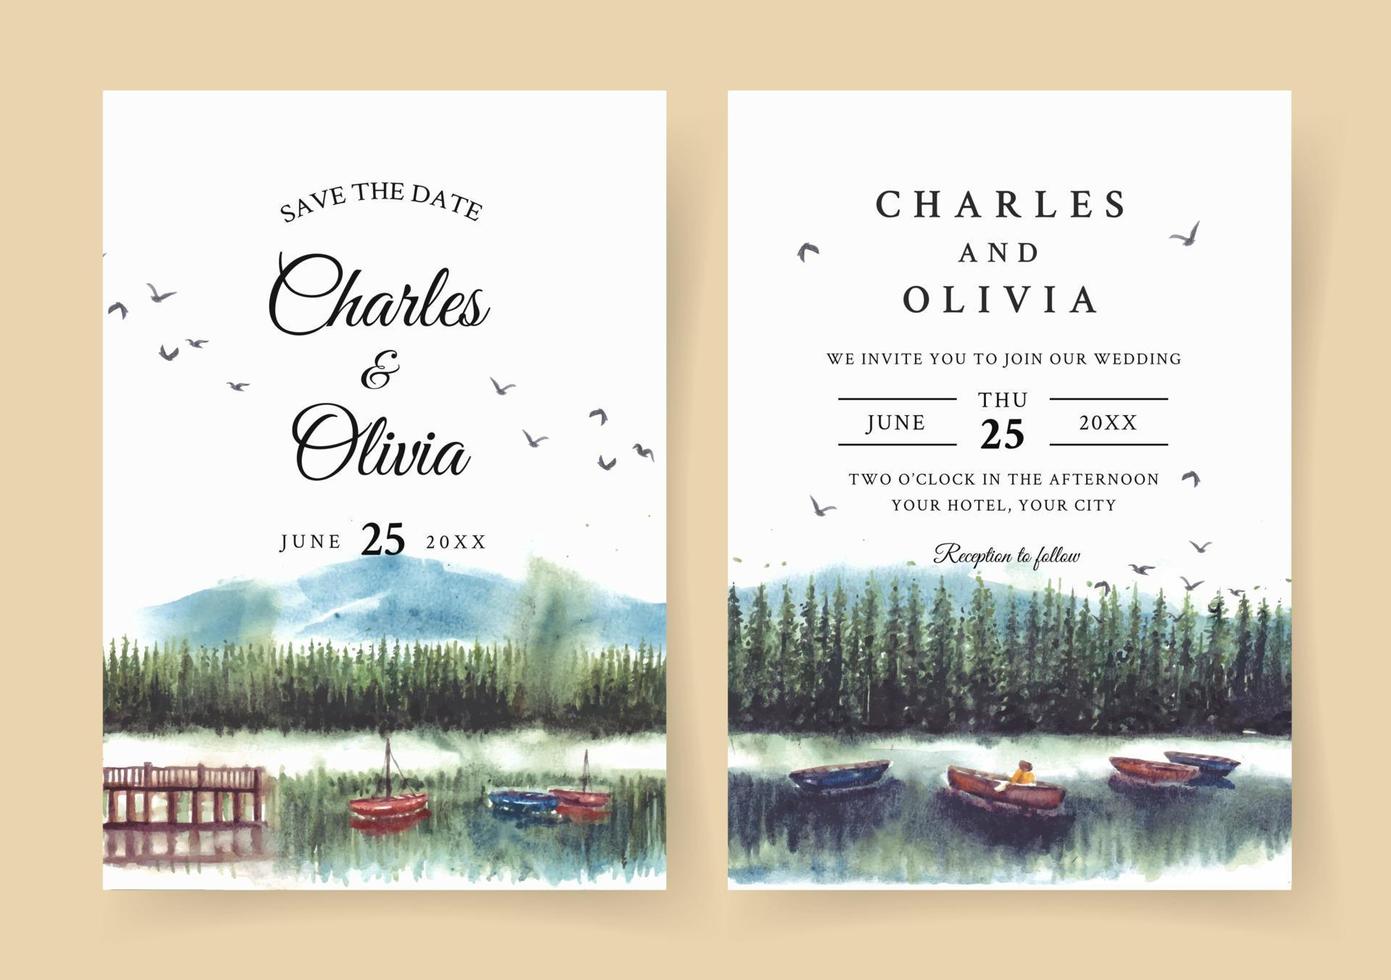 invitation de mariage aquarelle avec reflet de forêt de pins et bateau dans le lac vecteur